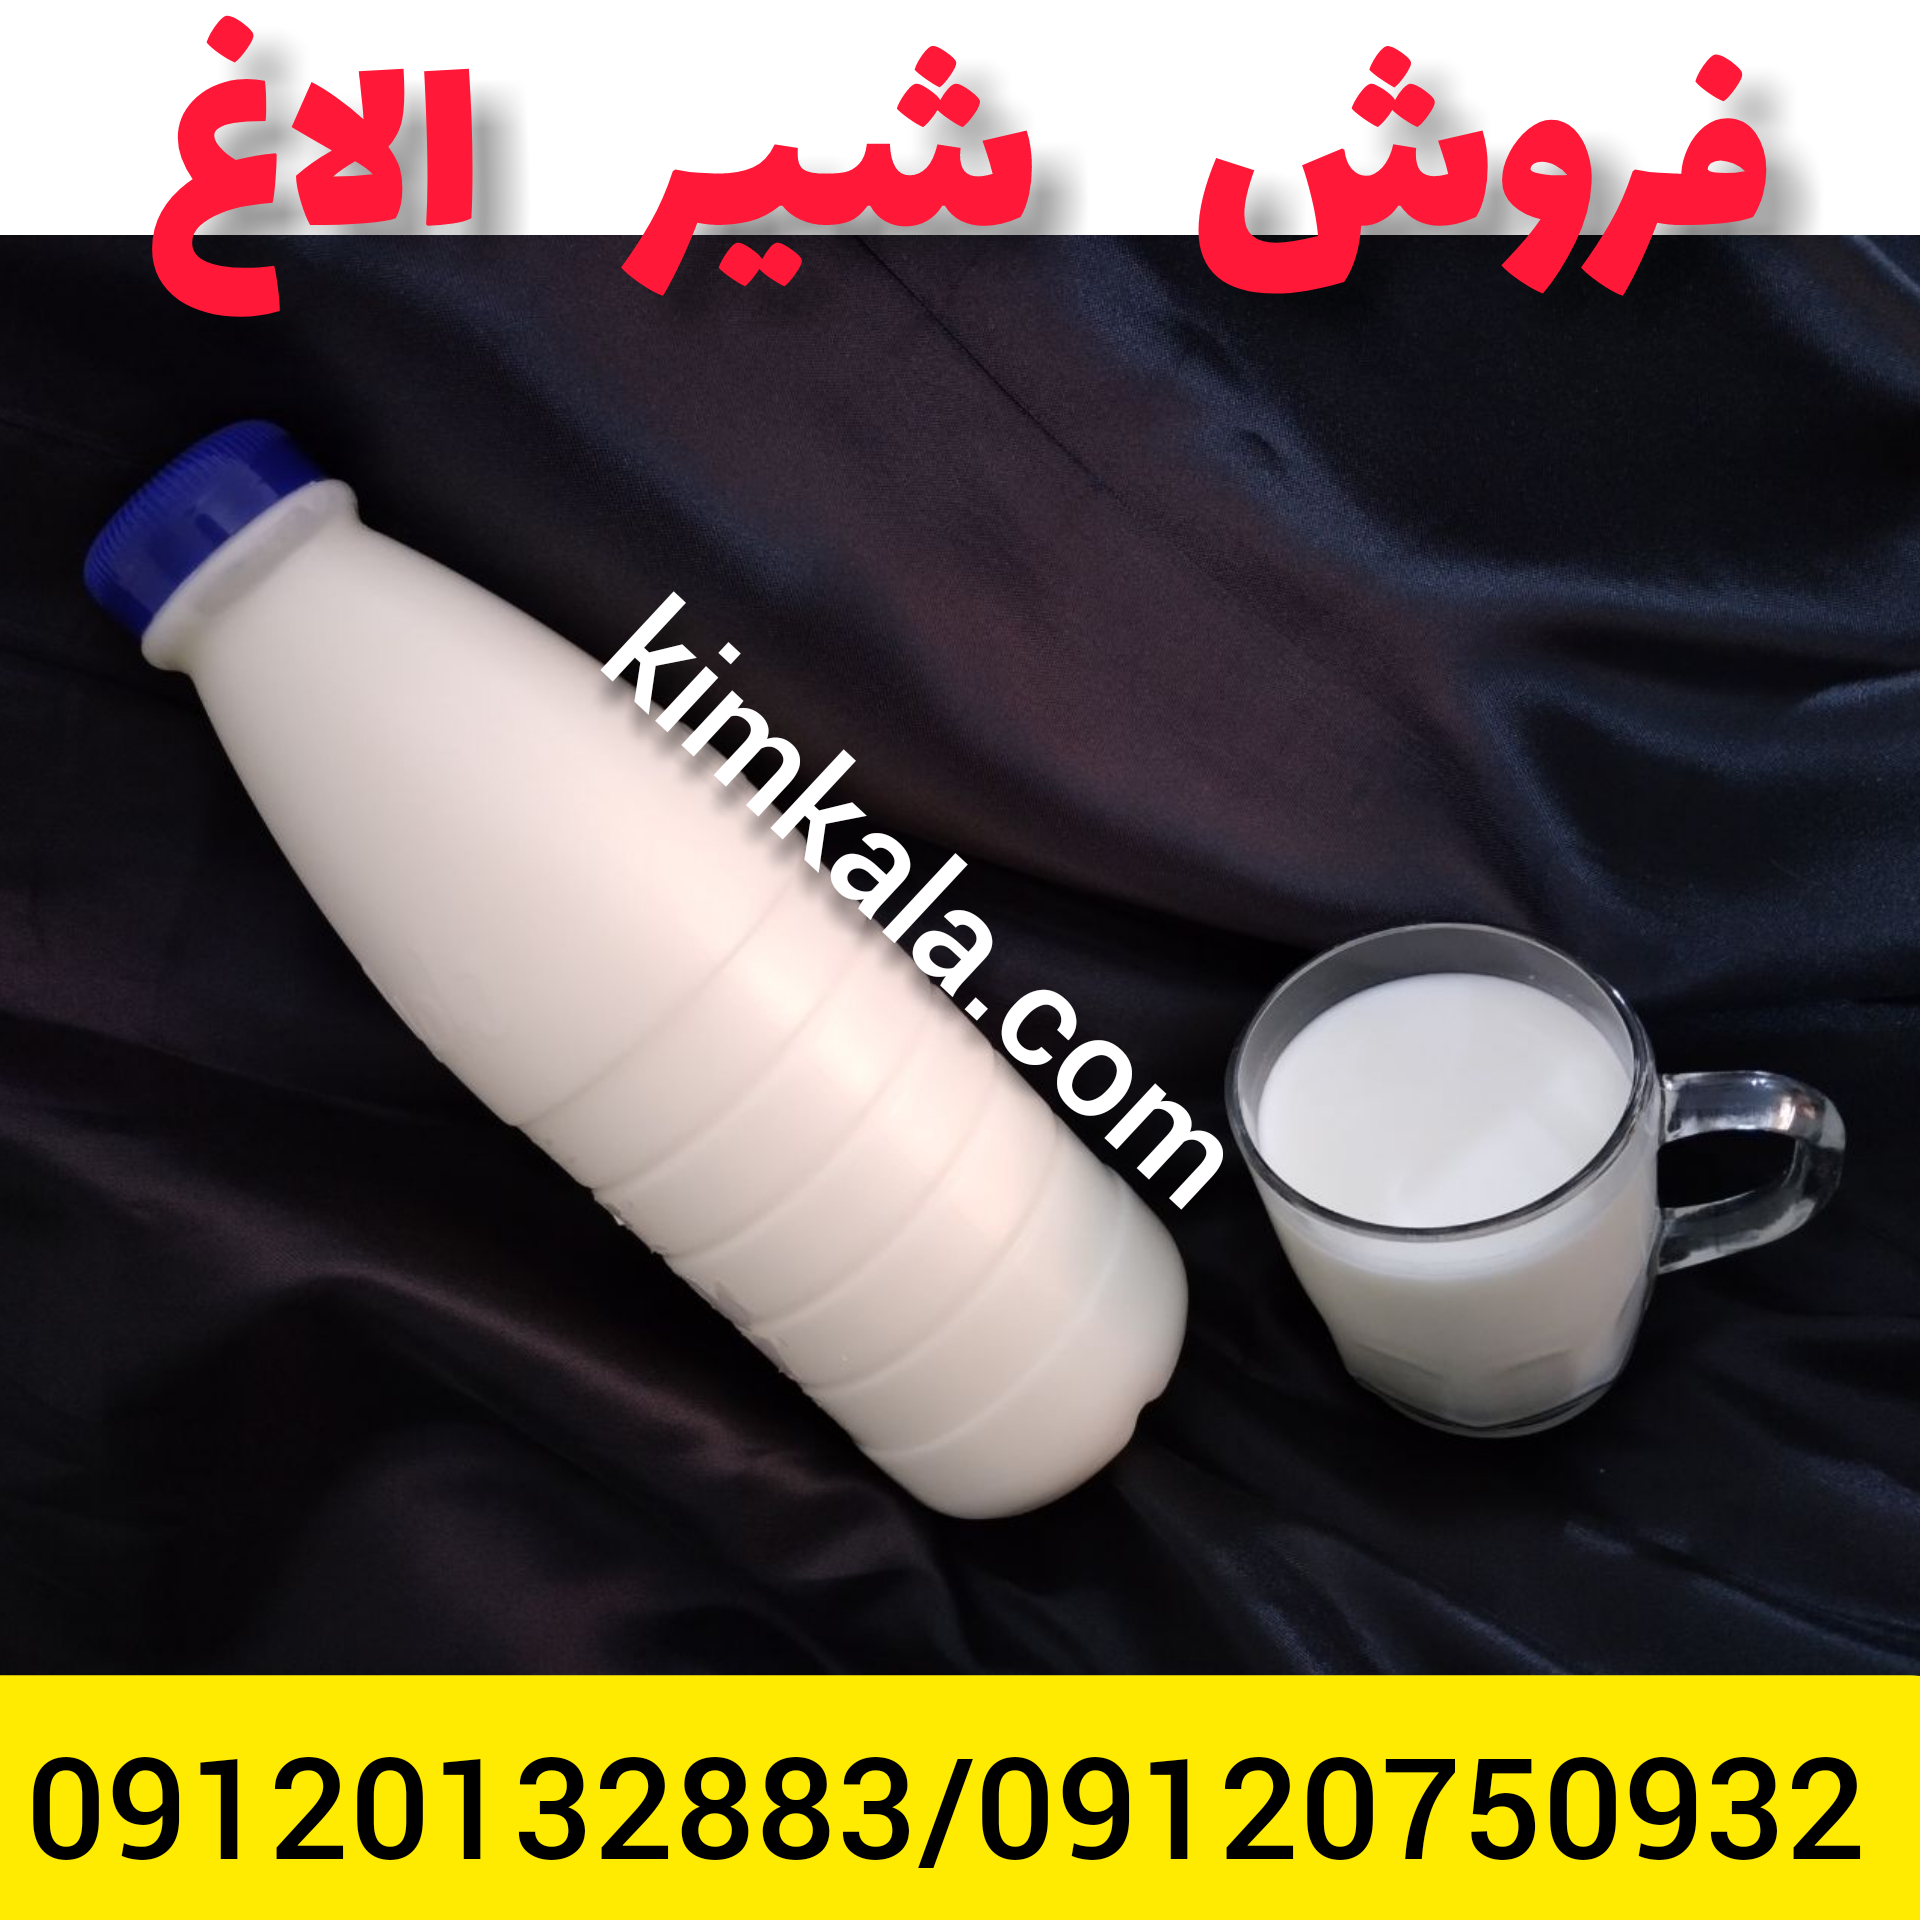 فروش شیر الاغ /09120750932 /قیمت شیر الاغ 